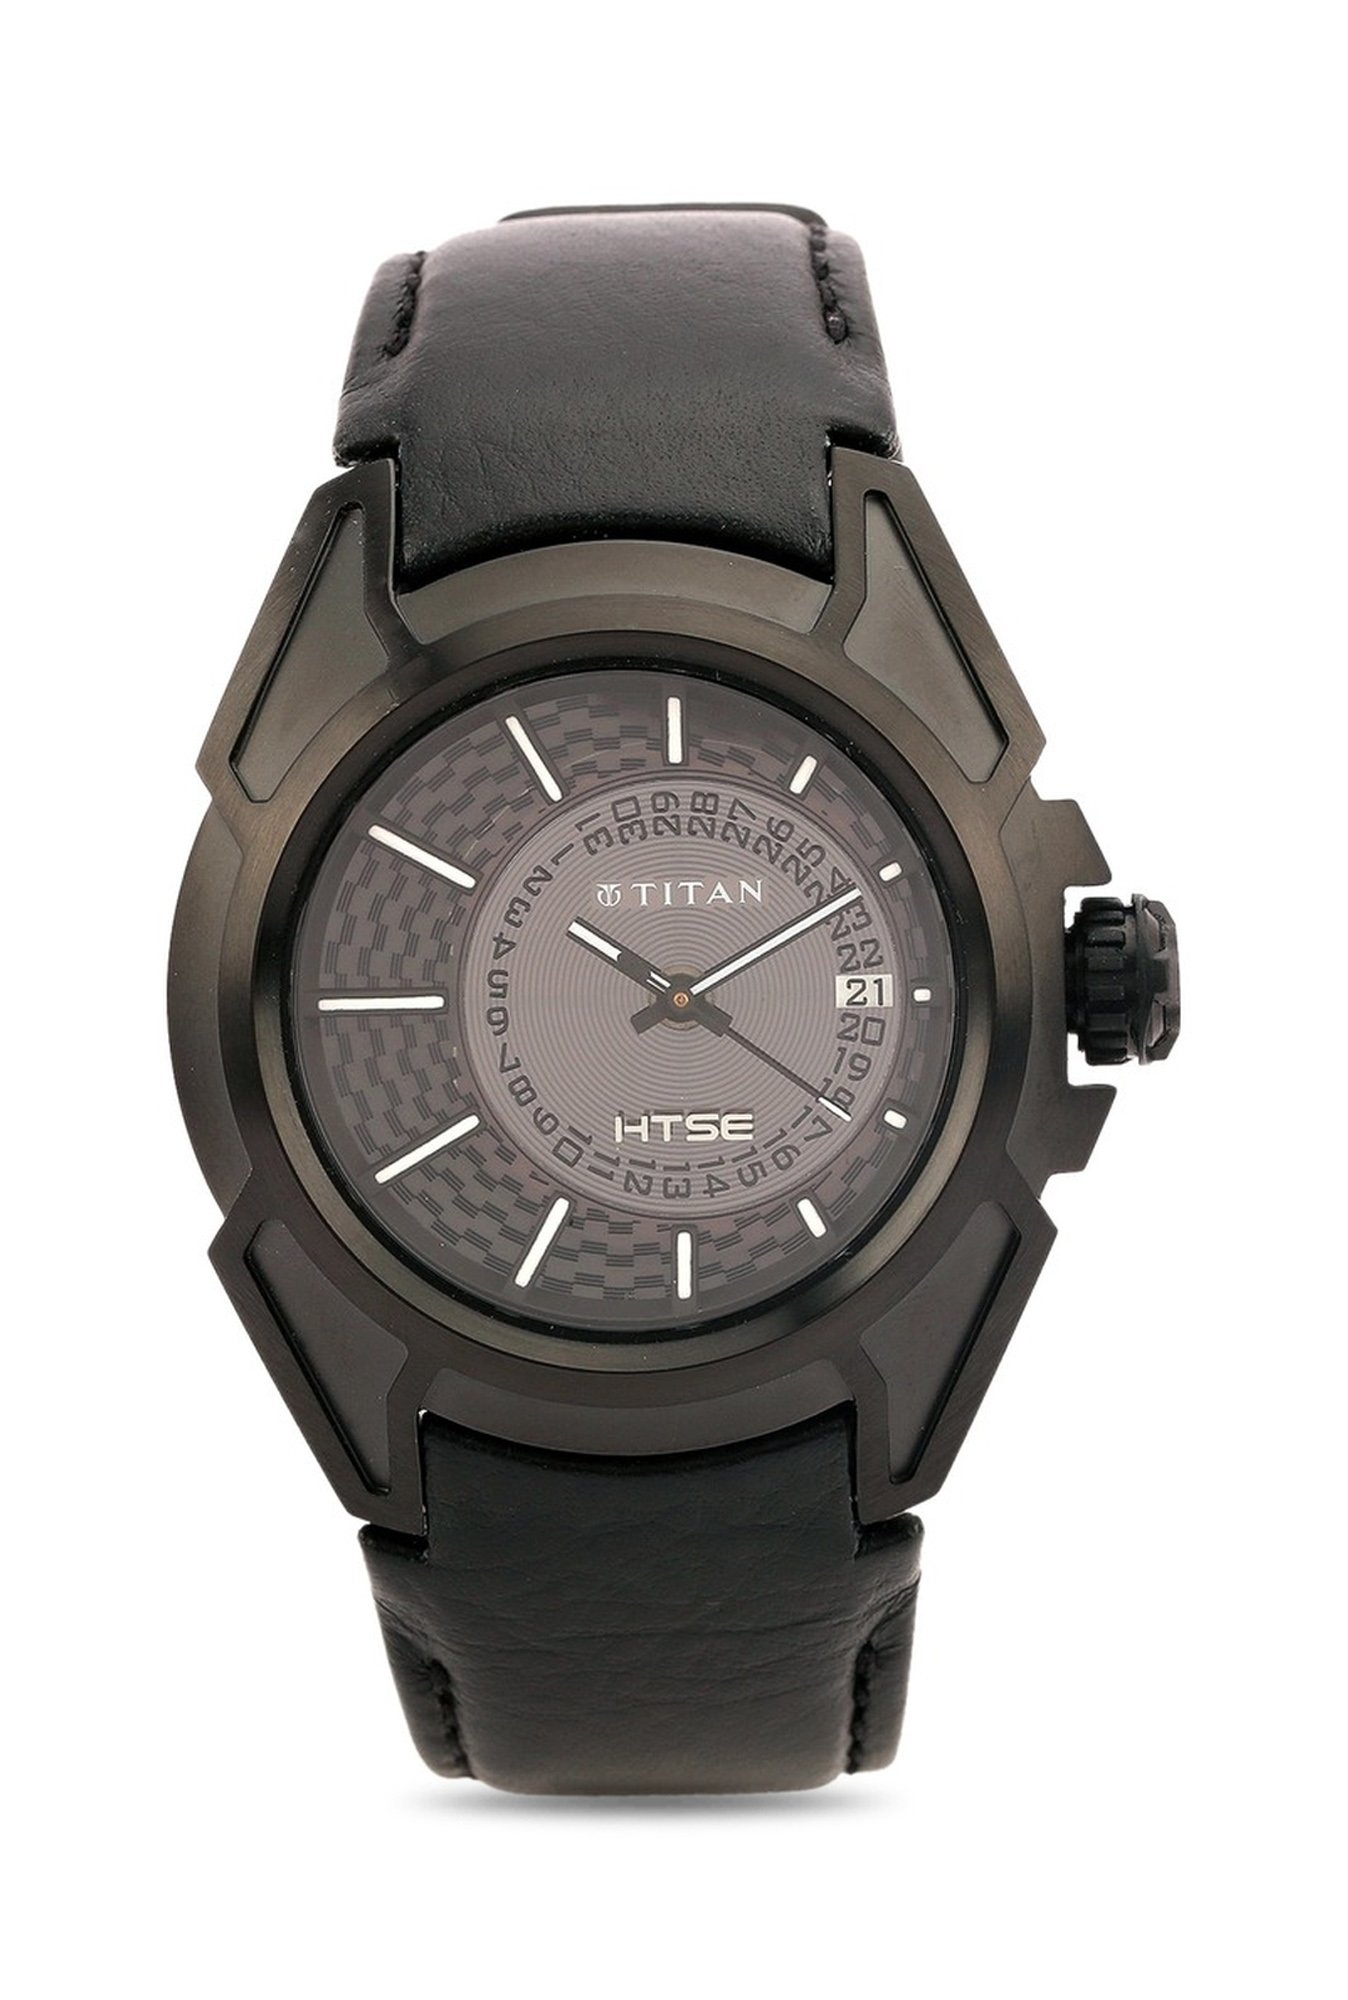 Titan HTSE Analog Watch - For Men - Buy Titan HTSE Analog Watch - For Men  1572KL01 Online at Best Prices in India | Flipkart.com